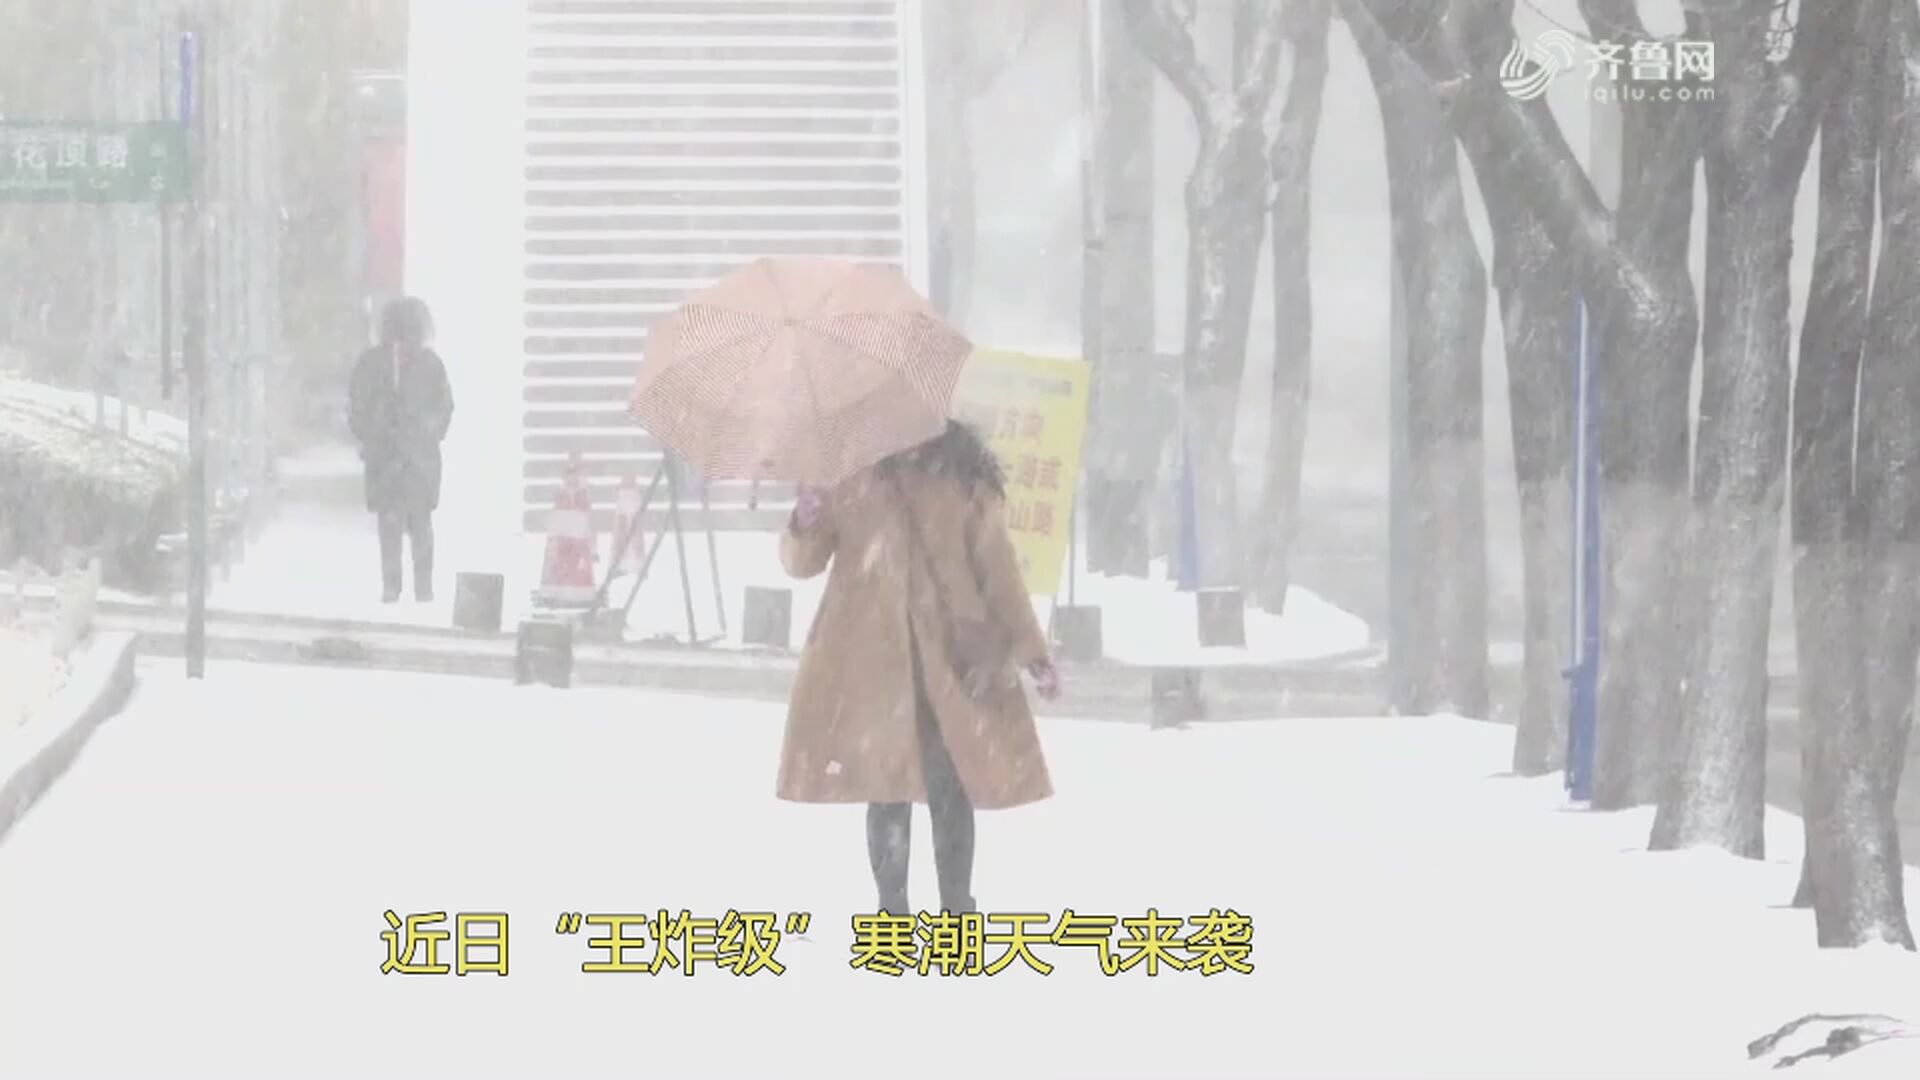 零下20多度是常态 看黑龙江人有哪些过冬法宝